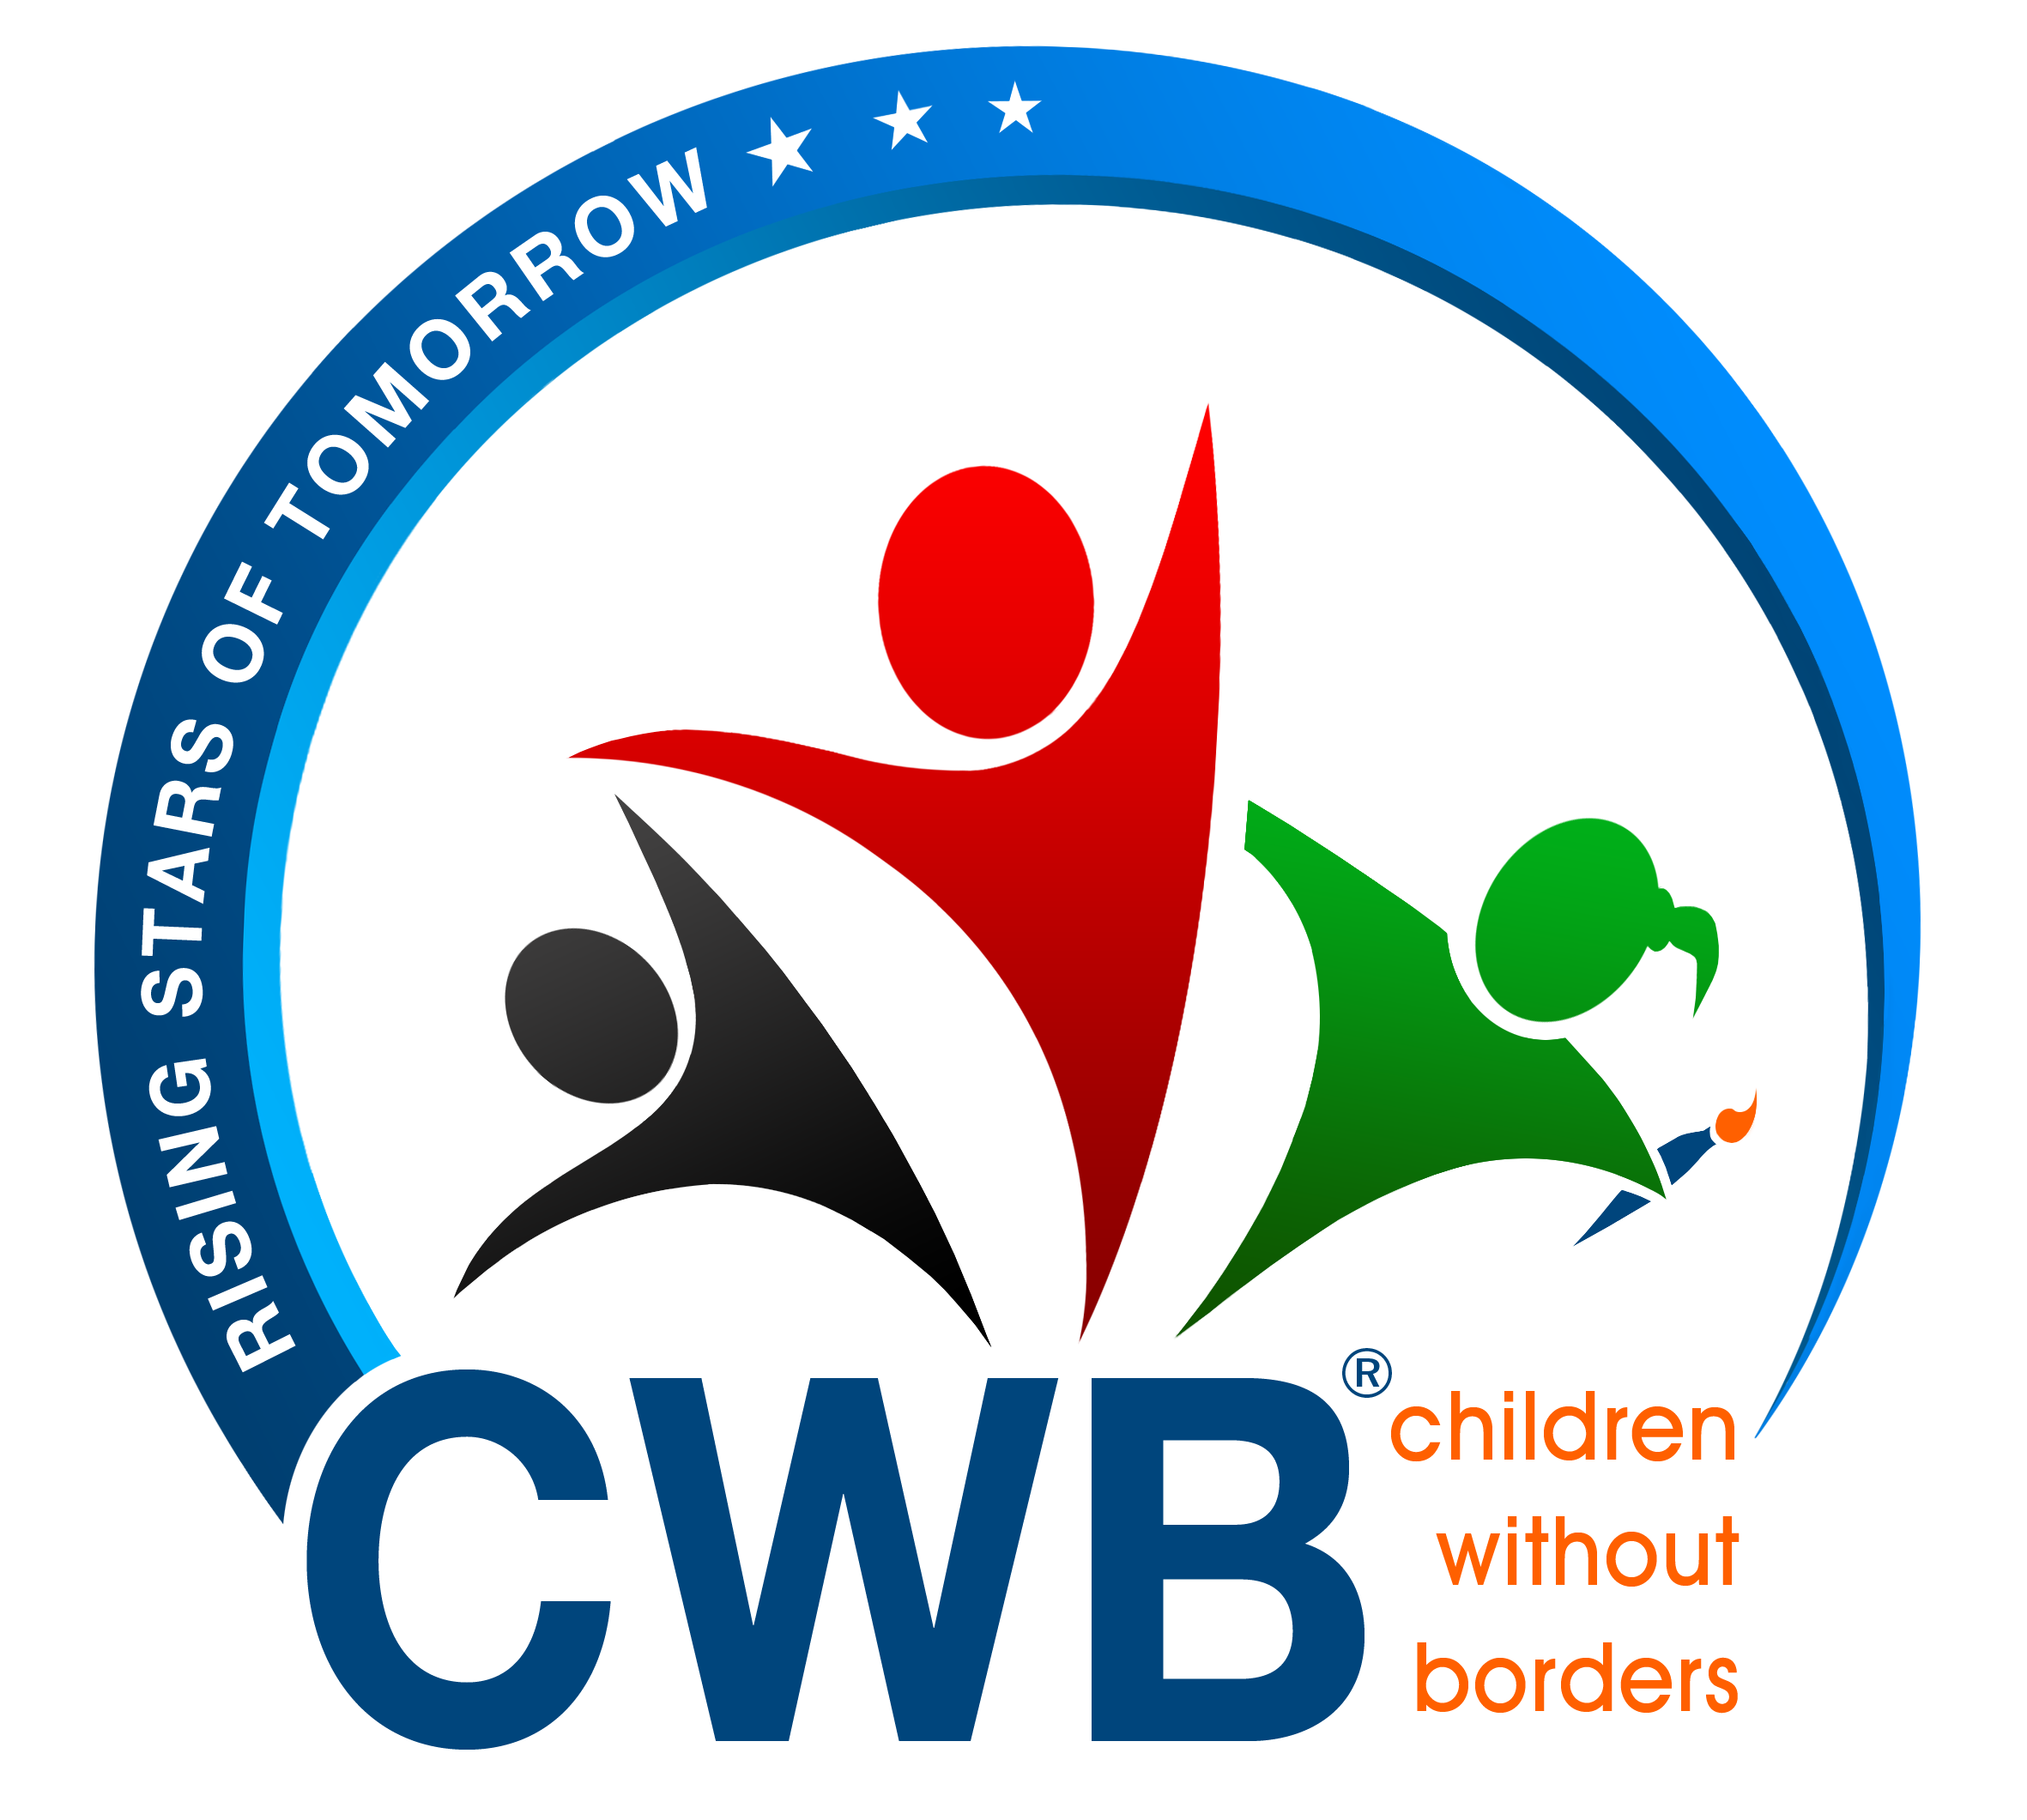 CWB Logo